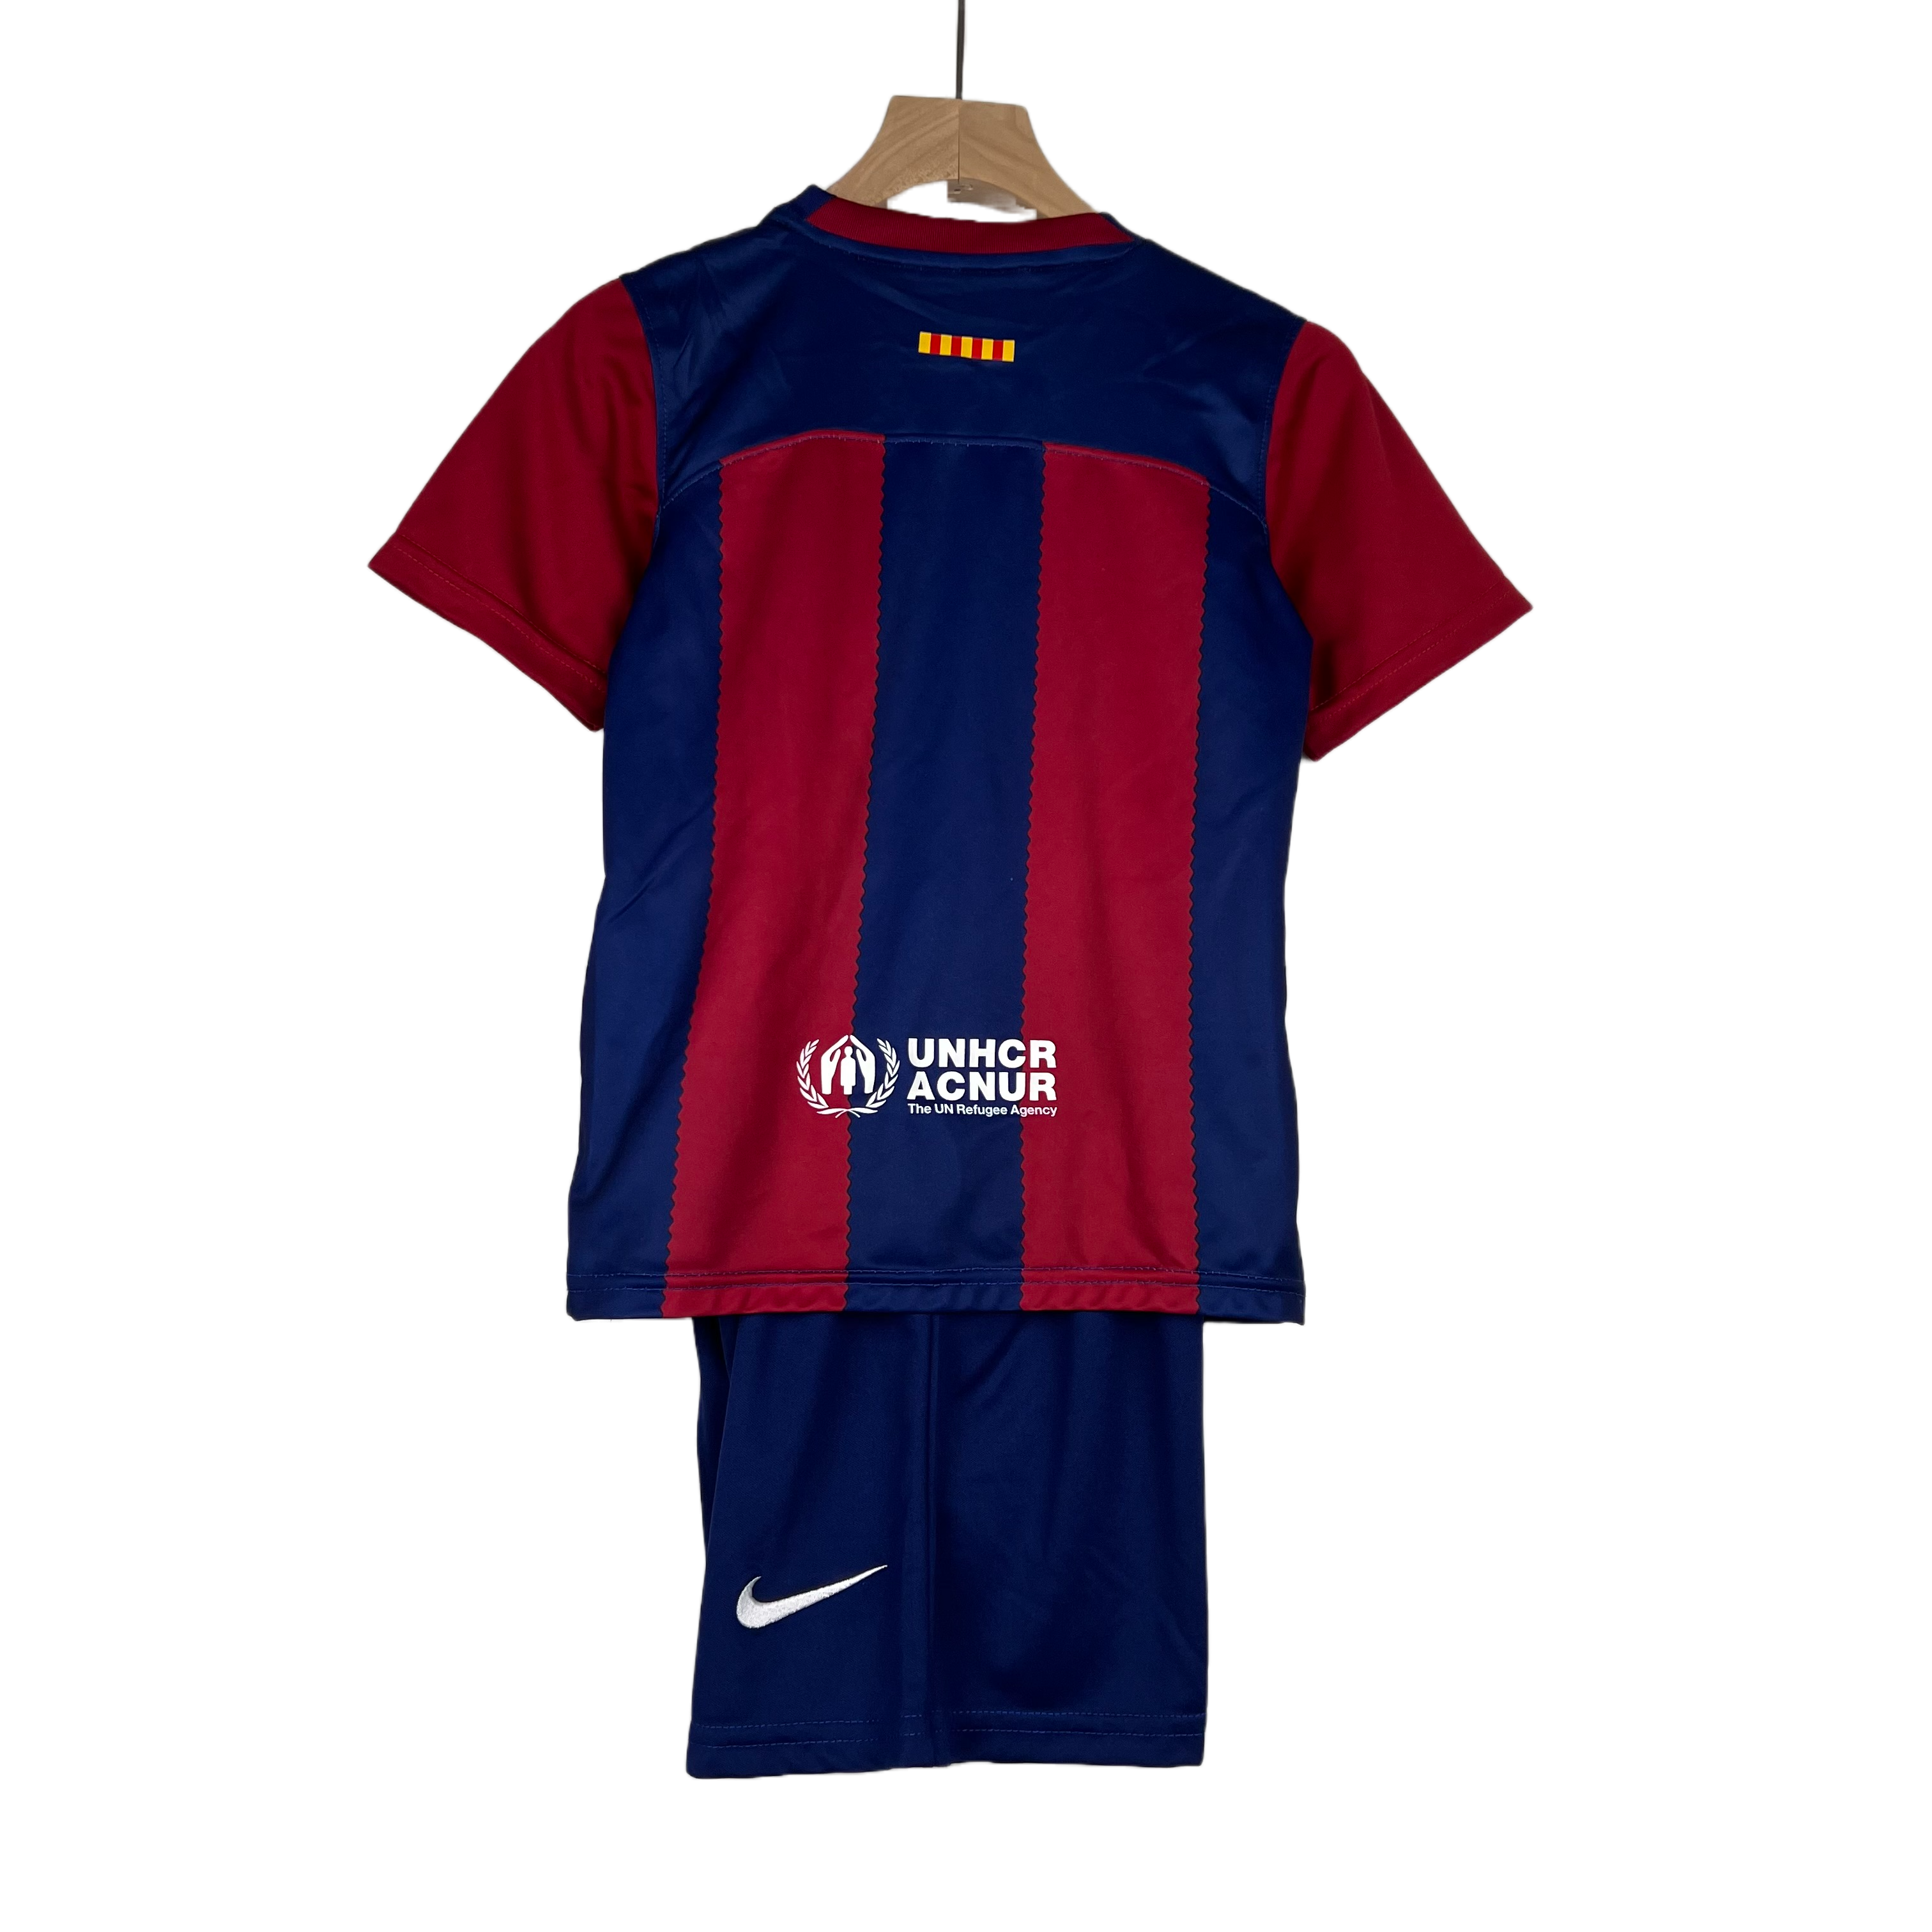 Barcelona Kids Kit - 23/24